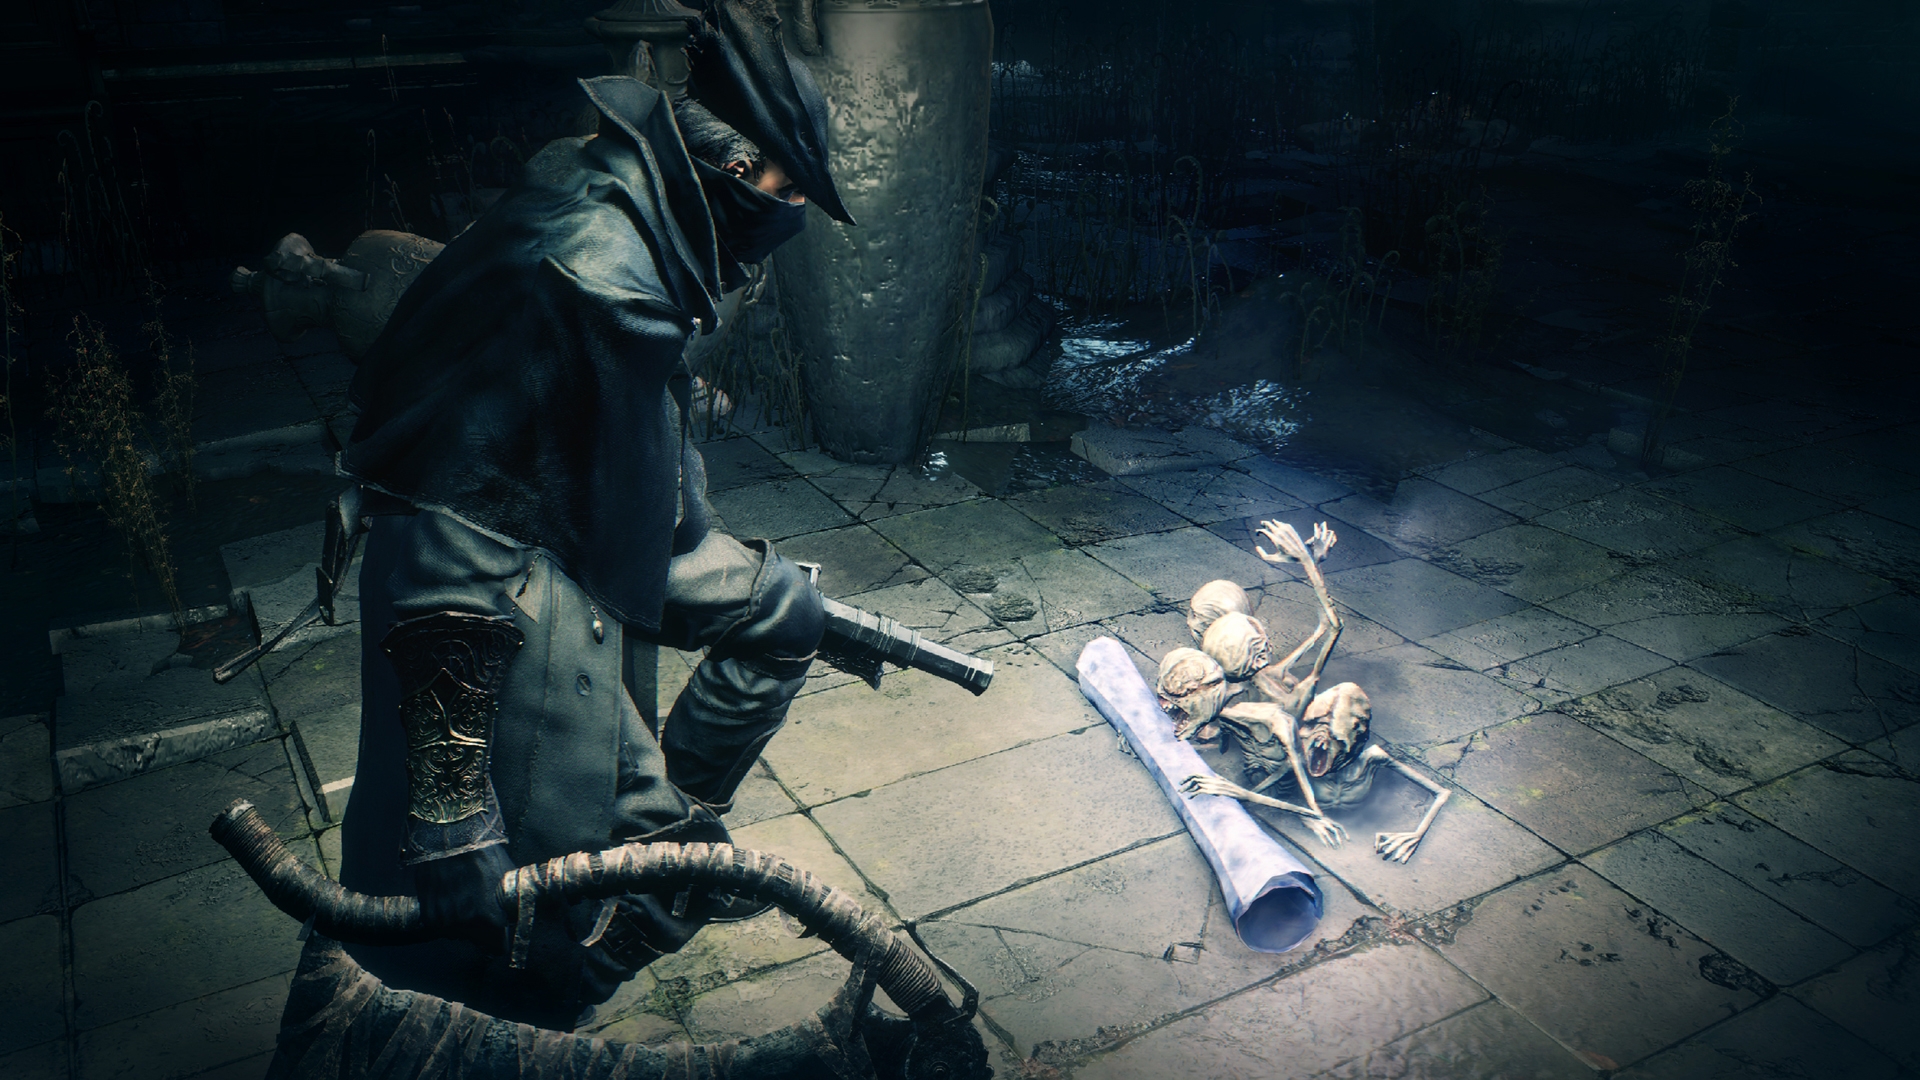 Bloodborne: vídeo mostra como será o gameplay do jogo